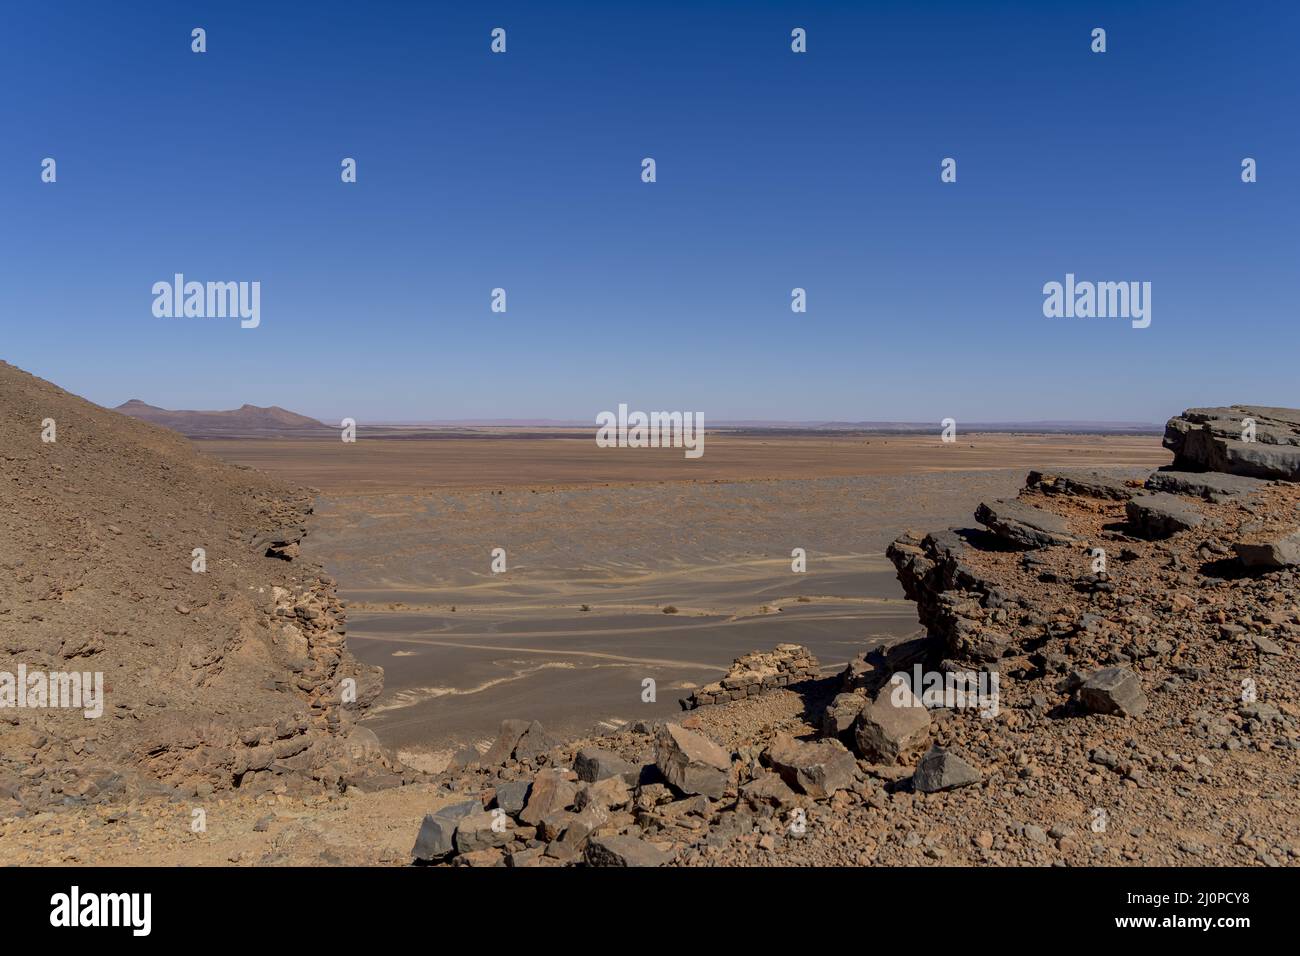 Gara Medouar ist Eine horshoe-förmige geologische Formation in der Nähe von Sijilmasa, Marokko, Afrika Stockfoto